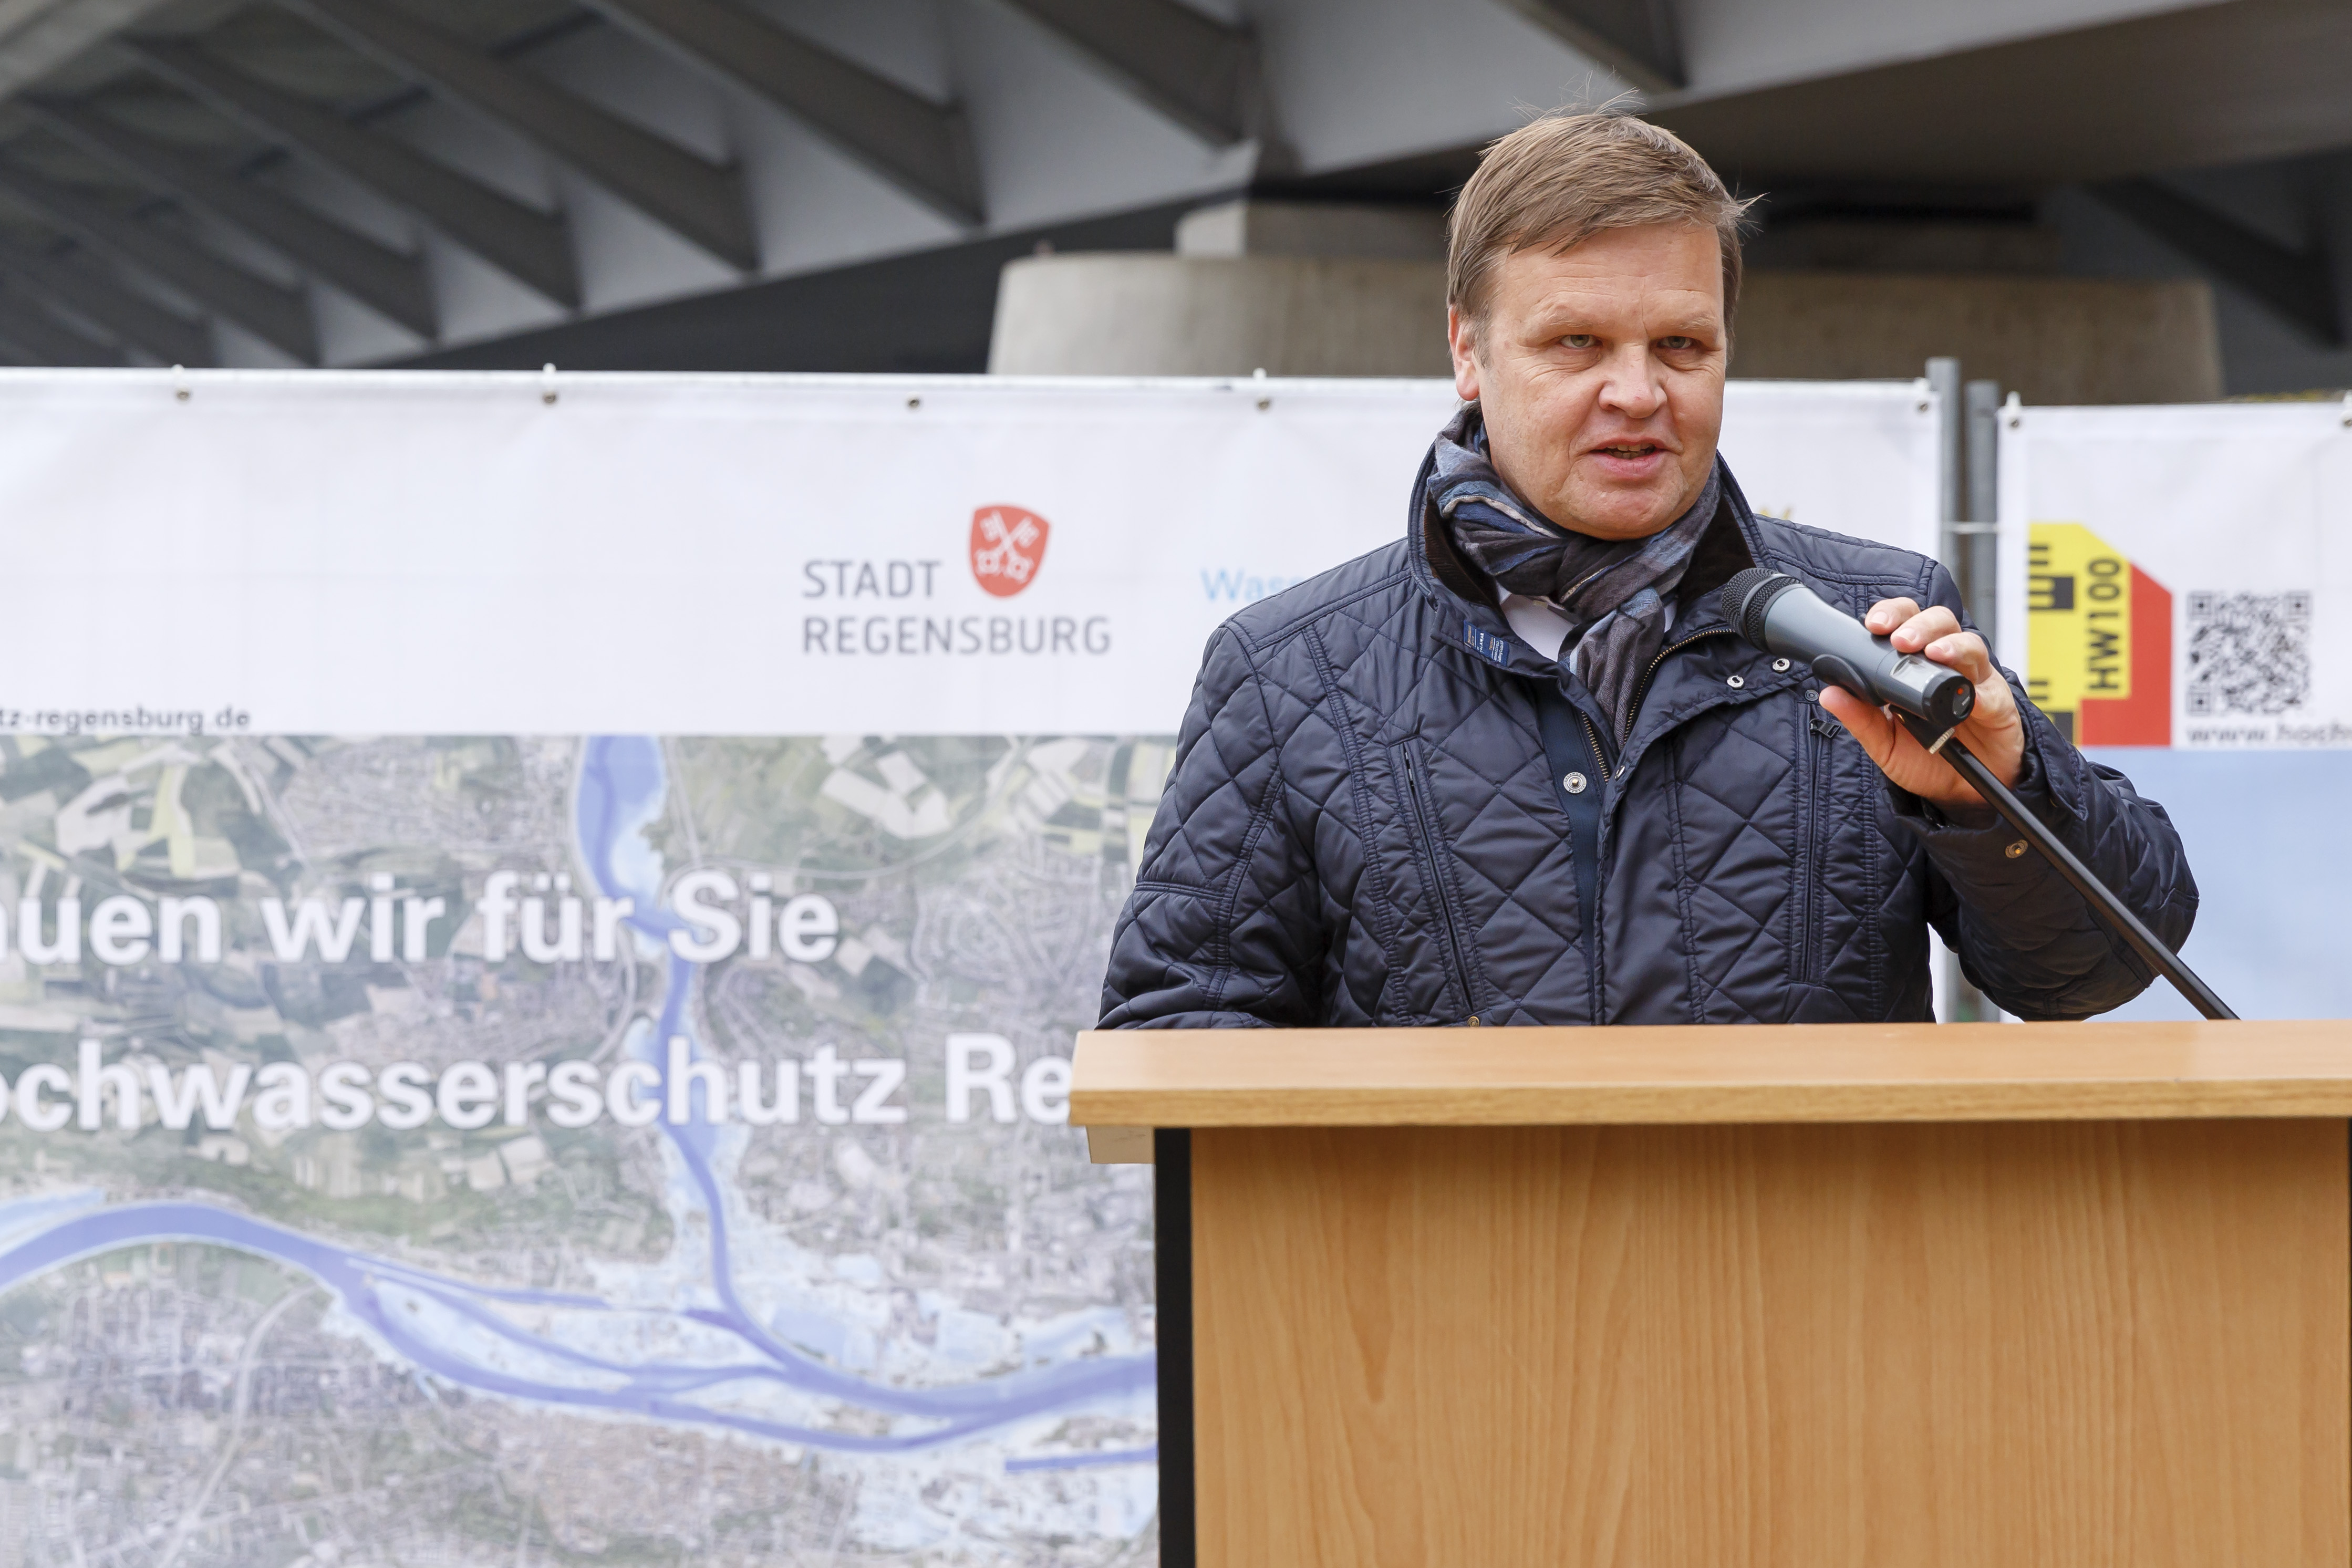 Der Geschäftsführer des Bayernhafen steht am Rednerpult, im Hintergrund ein Plakat zum Hochwasserschutz Regensburg und die Nibelungenbrücke.